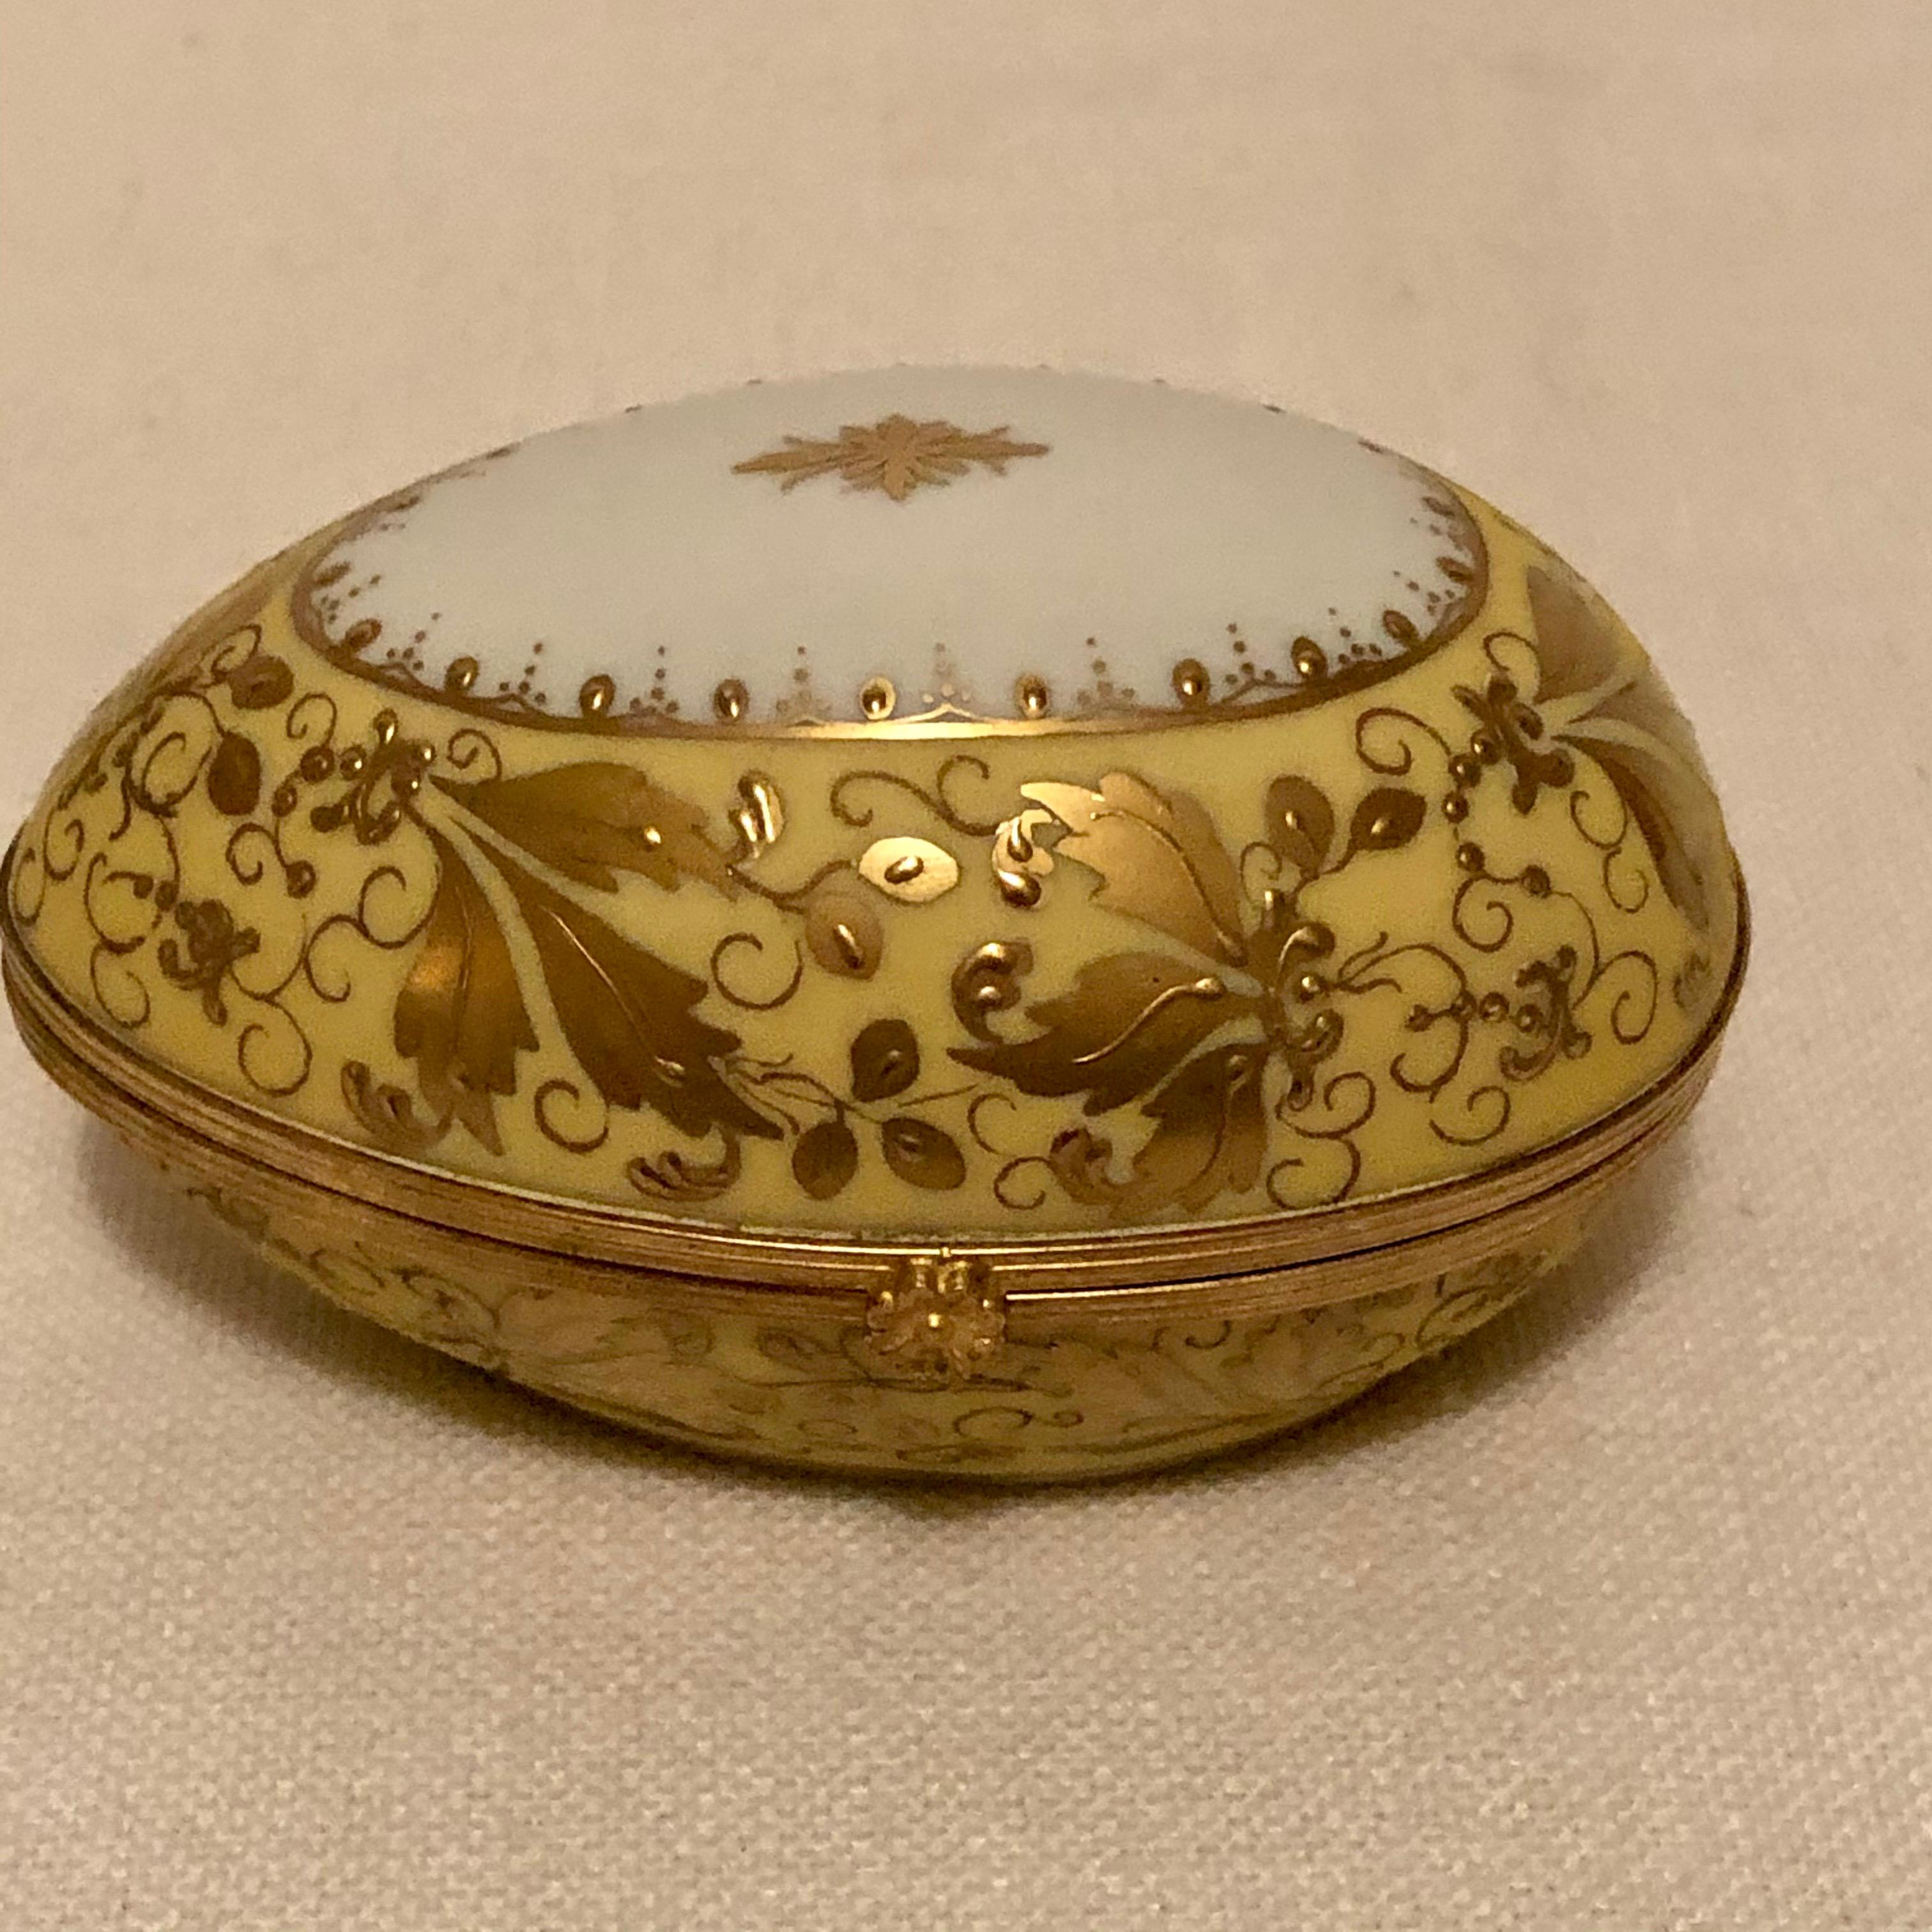 Il s'agit d'une magnifique boîte Le Tallec en forme d'œuf:: qui est décorée d'une dorure en relief élaborée et de bijoux dorés. Regardez les photos pour voir la décoration complexe de la dorure en relief sur toute cette boîte en forme d'œuf. Cette